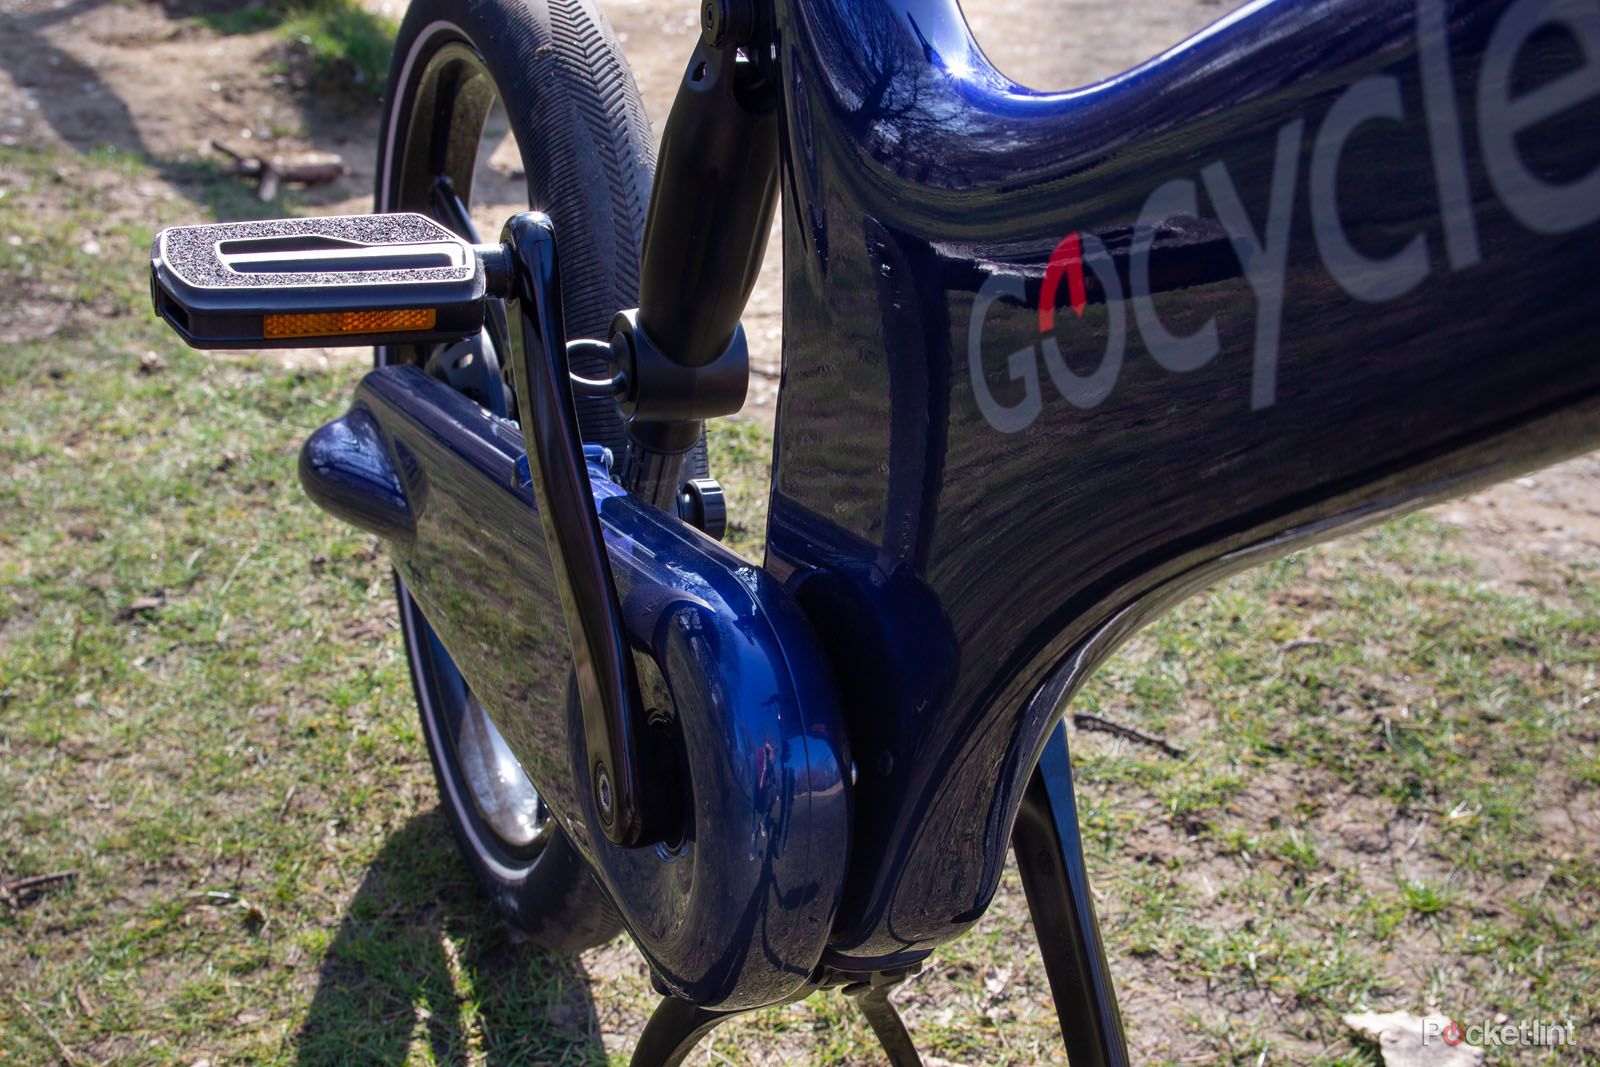 Gocycle G3 image 8